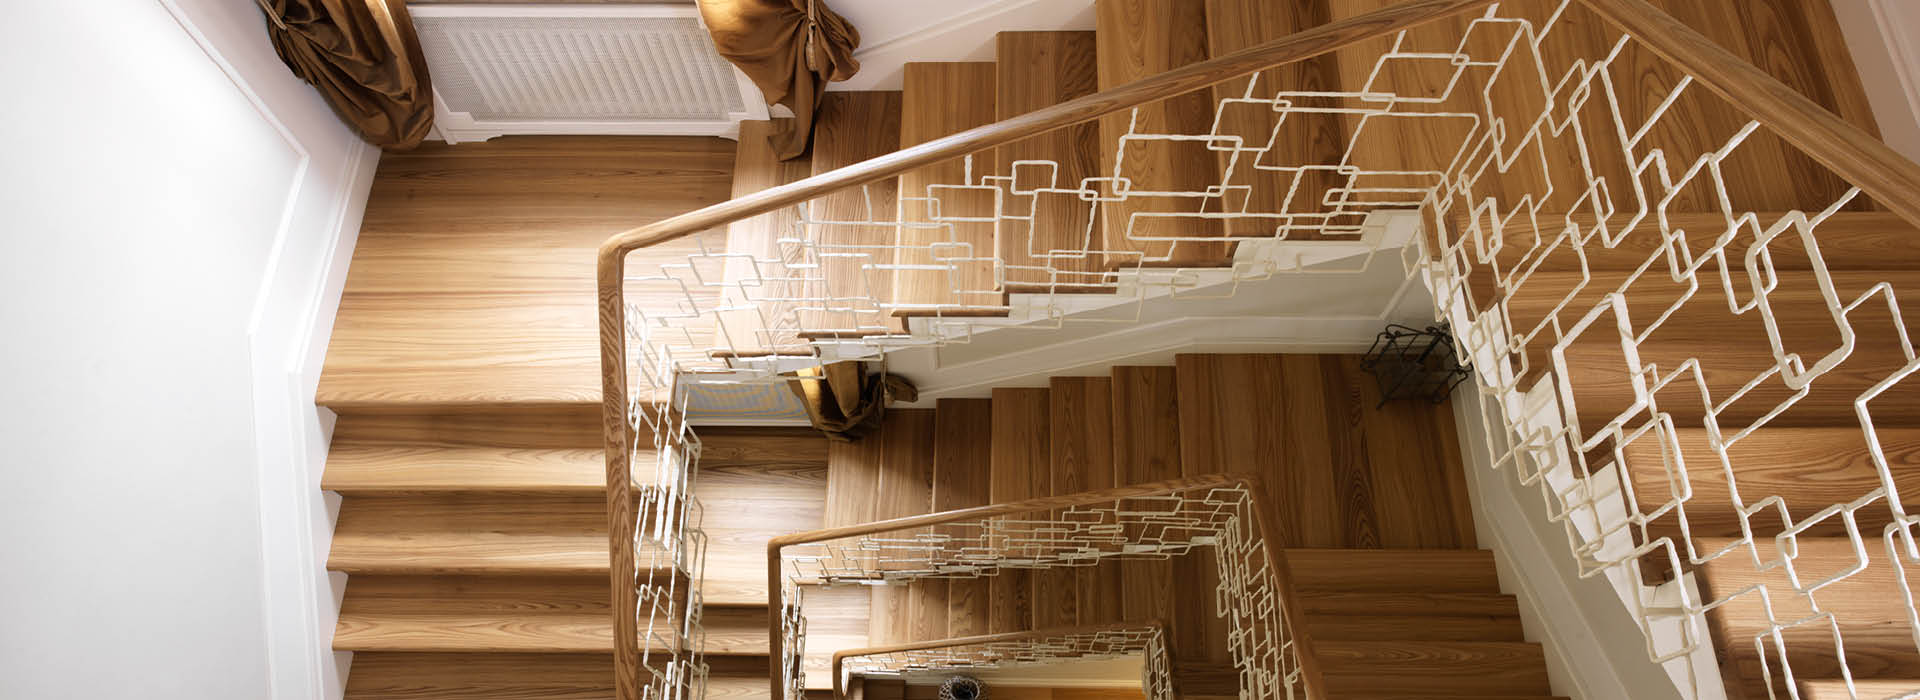 Rivestimenti in legno per scale e gradini by Cadorin Parquet